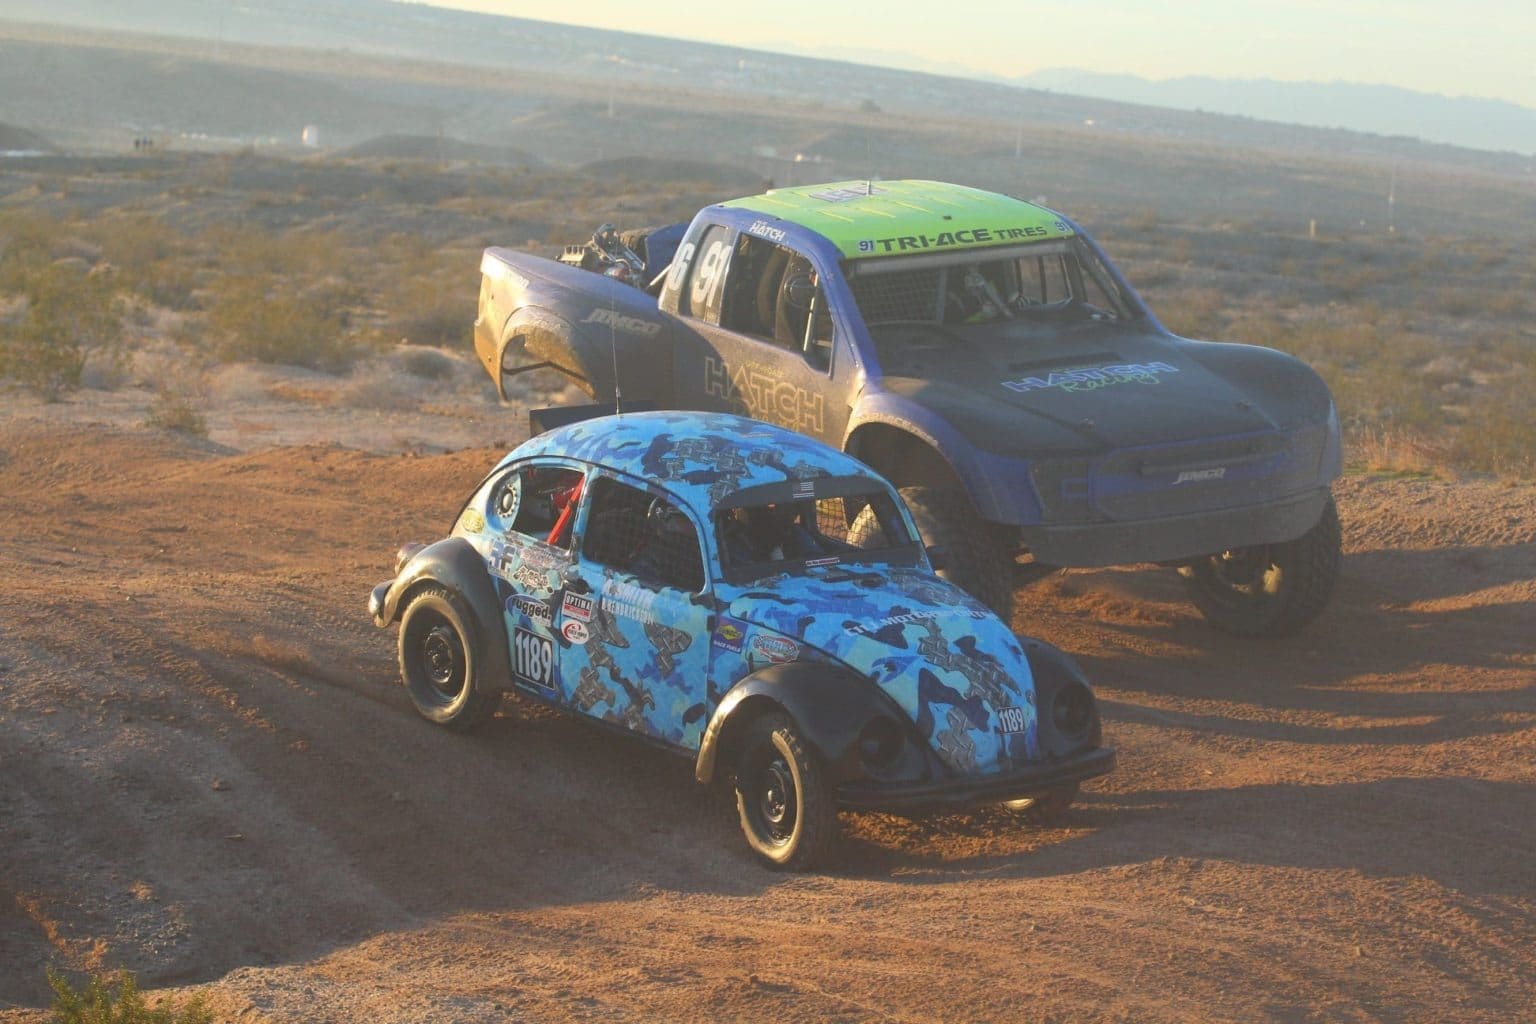 A VW Bettle races beside a Trophy Truck.